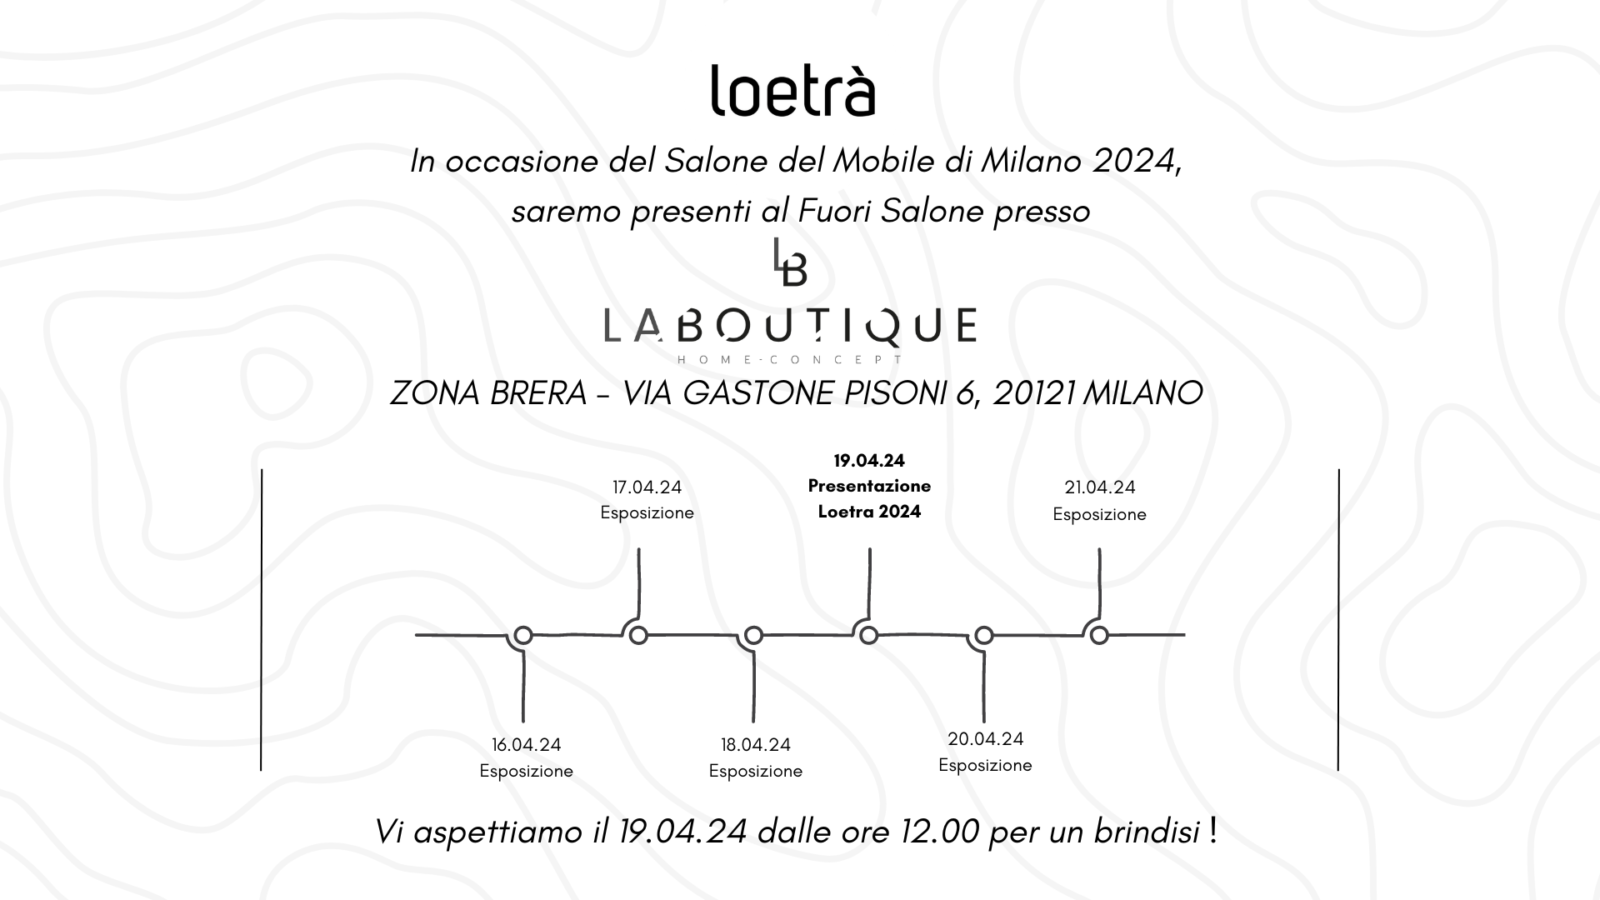 Salone del Mobile di Milano 2024 loetrà